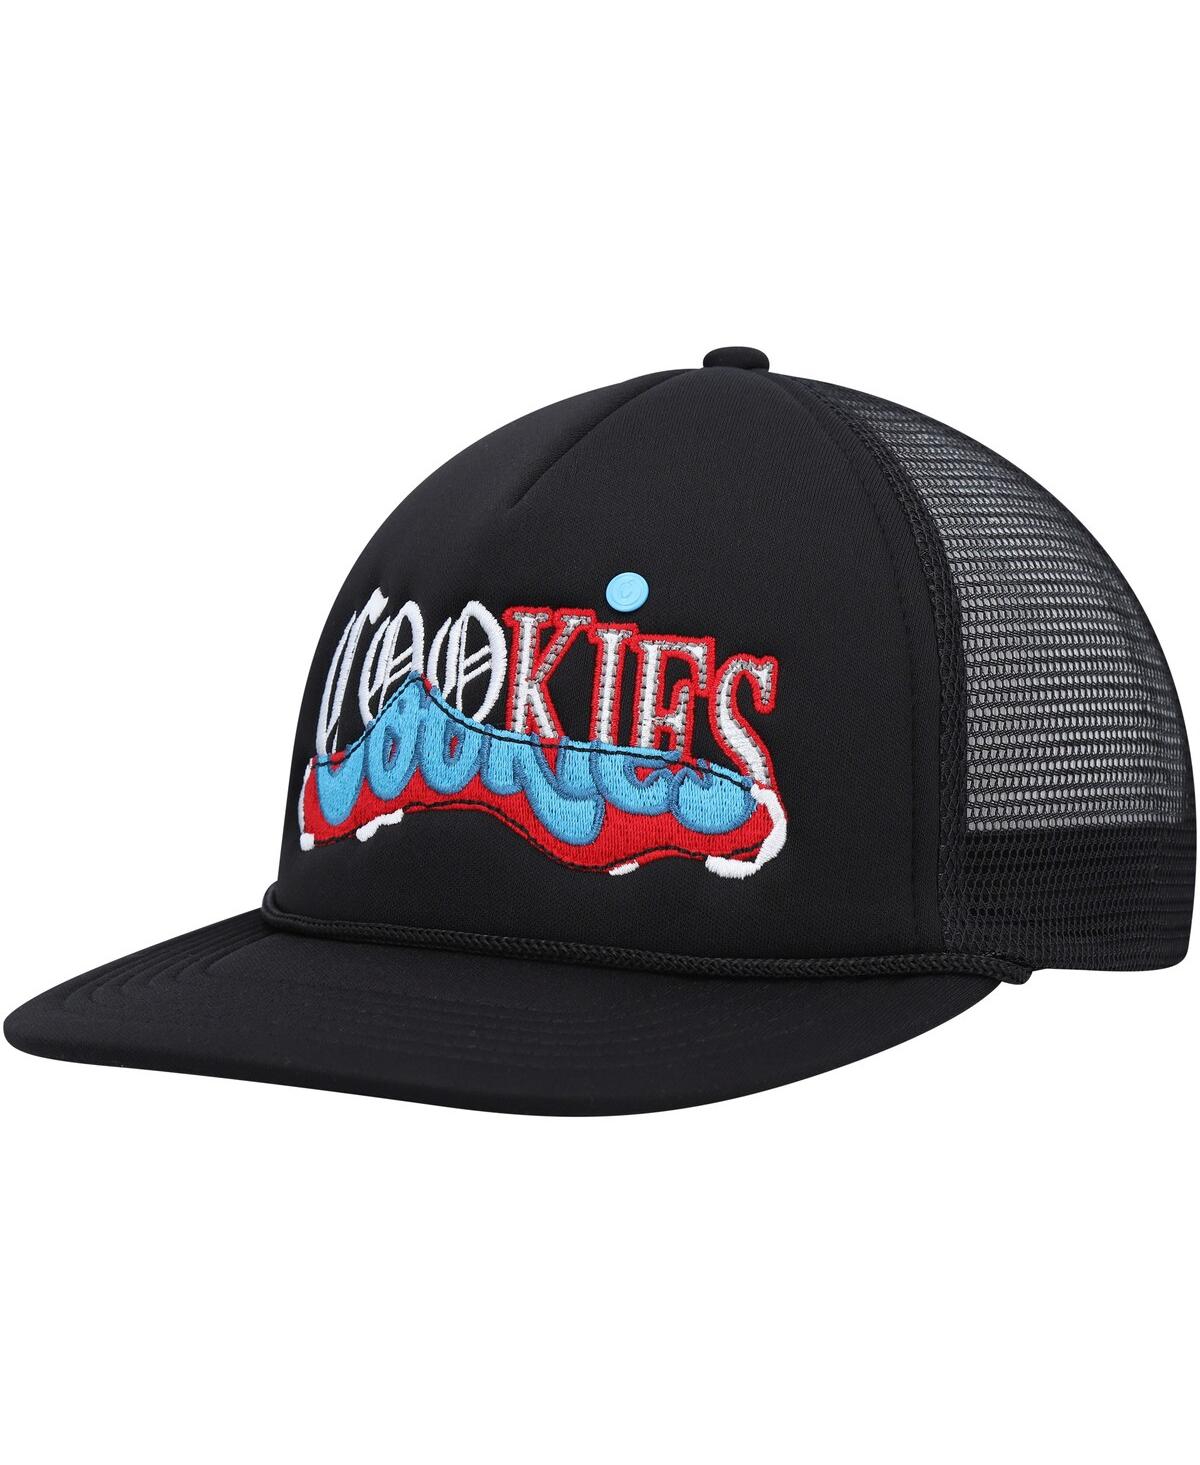 Cookies Men's  Black Upper Echelon Trucker Snapback Hat